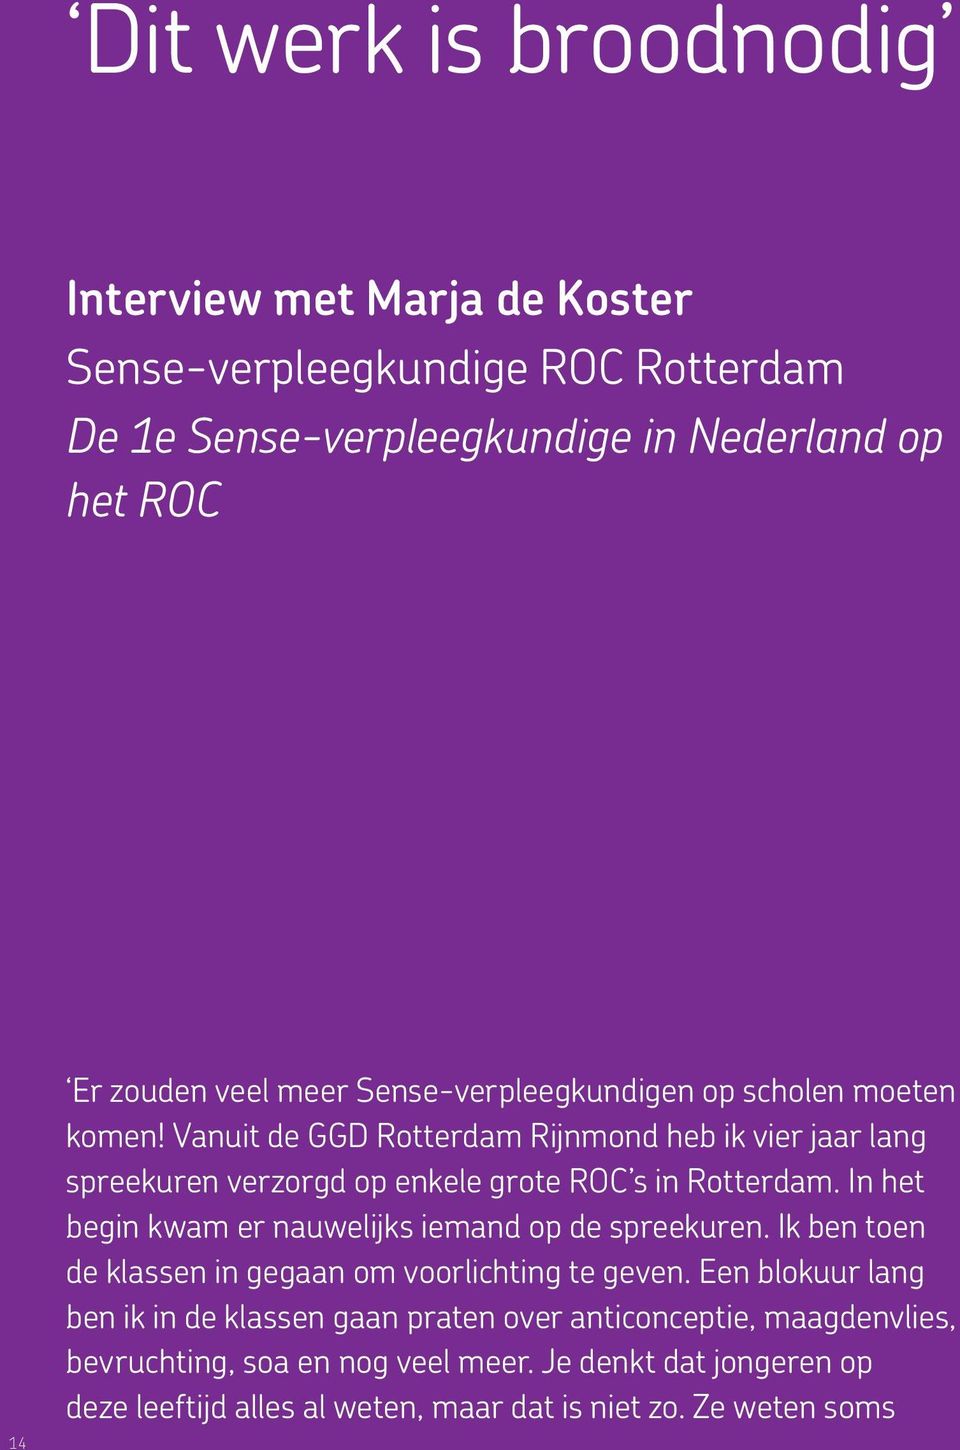 Vanuit de GGD Rotterdam Rijnmond heb ik vier jaar lang spreekuren verzorgd op enkele grote ROC s in Rotterdam.